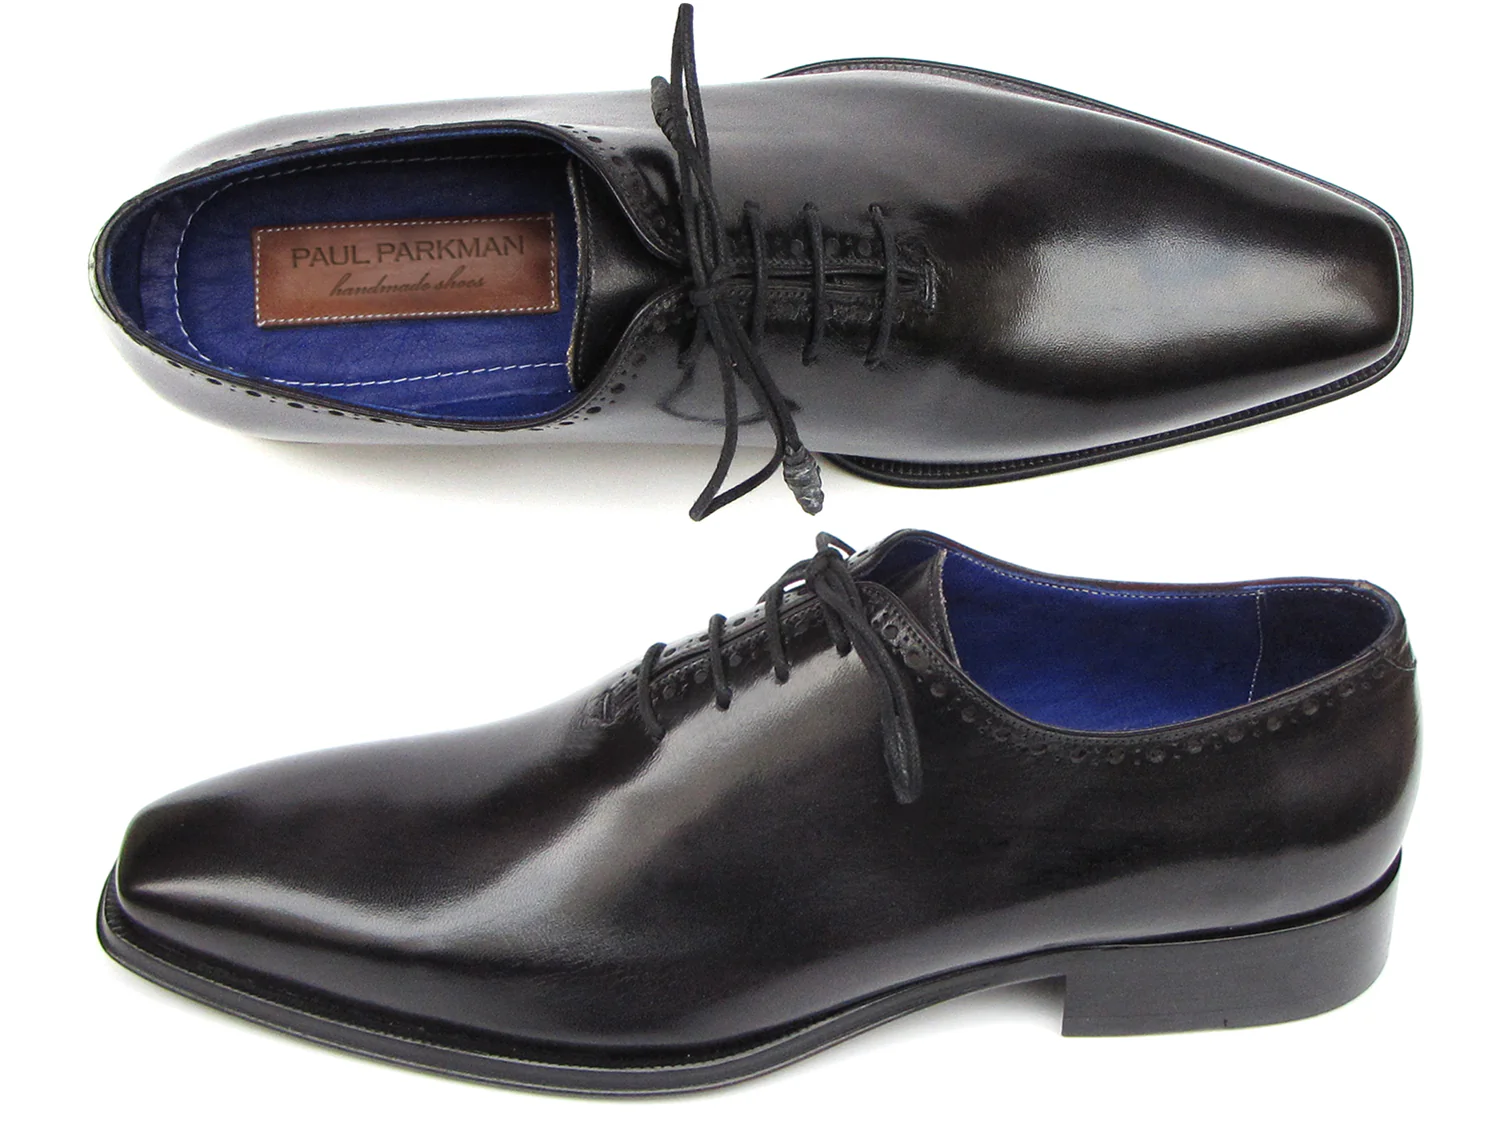 Paul Parkman Black Genuine Leather Men's Plain Toe Oxford Floater Dress Shoes 025-BLK